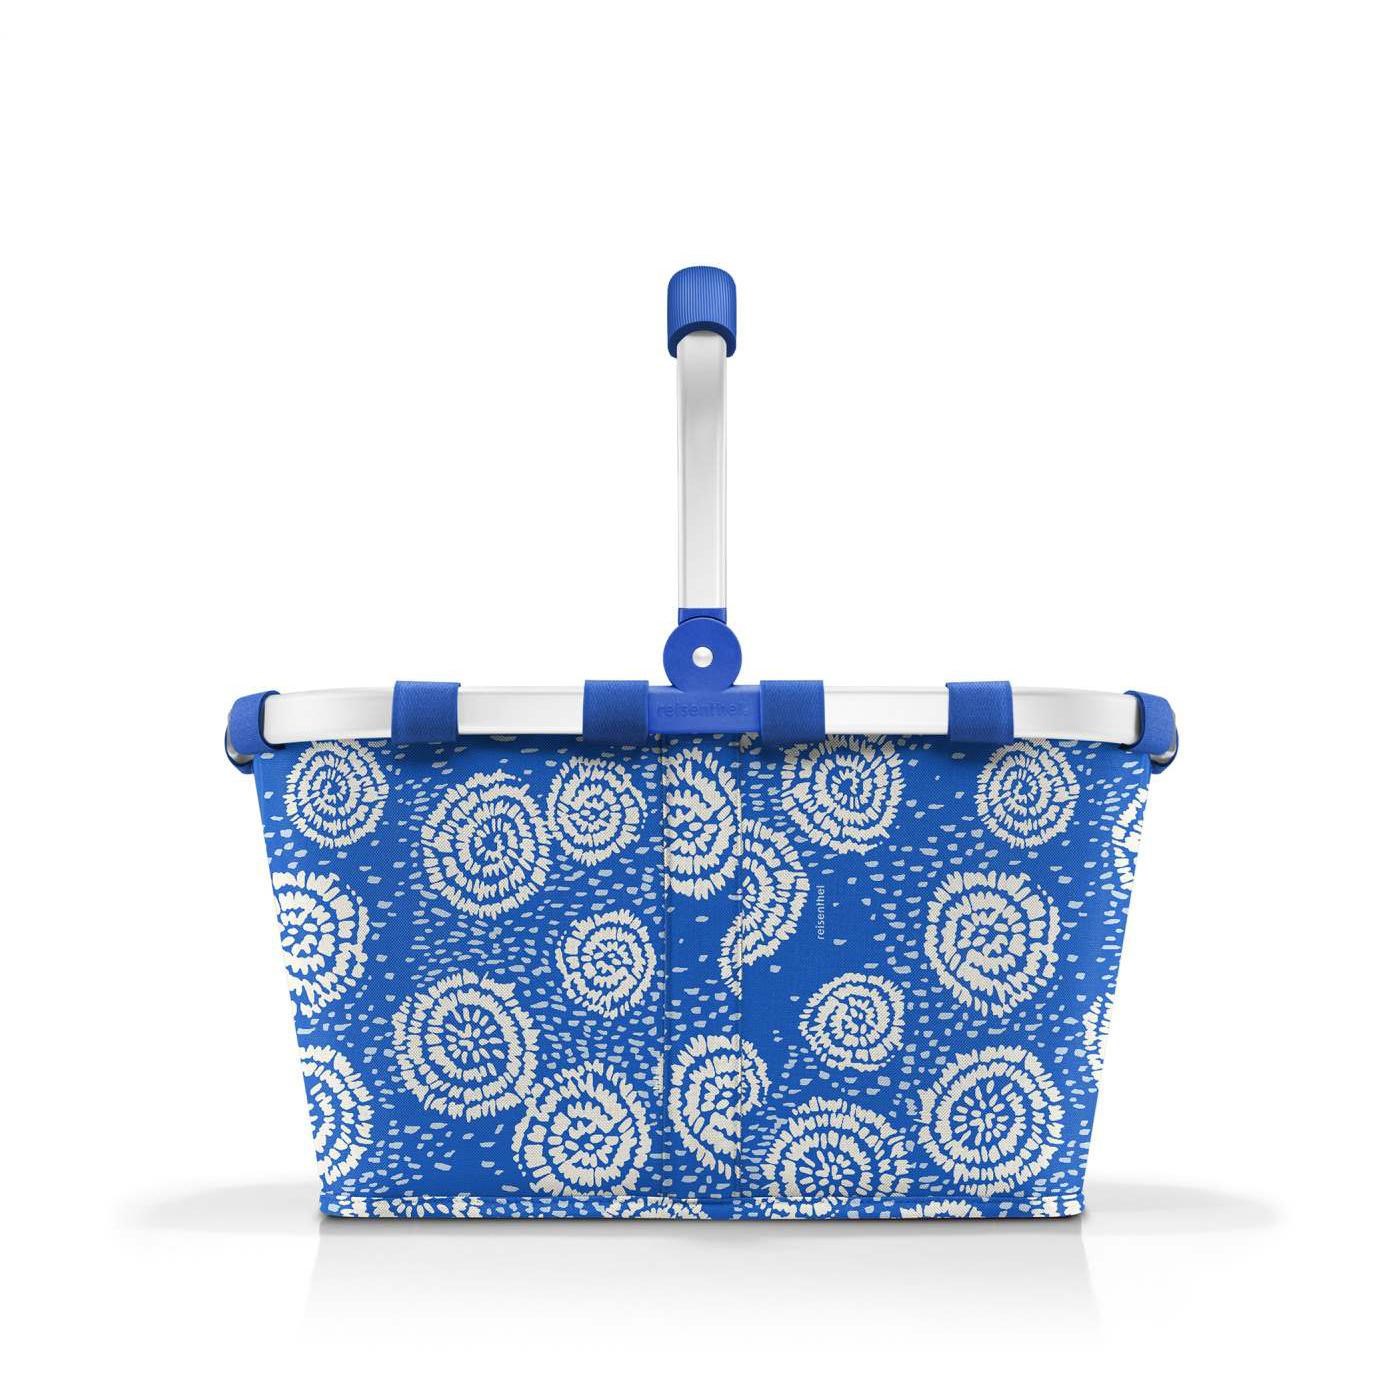 Nákupní košík Carrybag batik strong blue_2